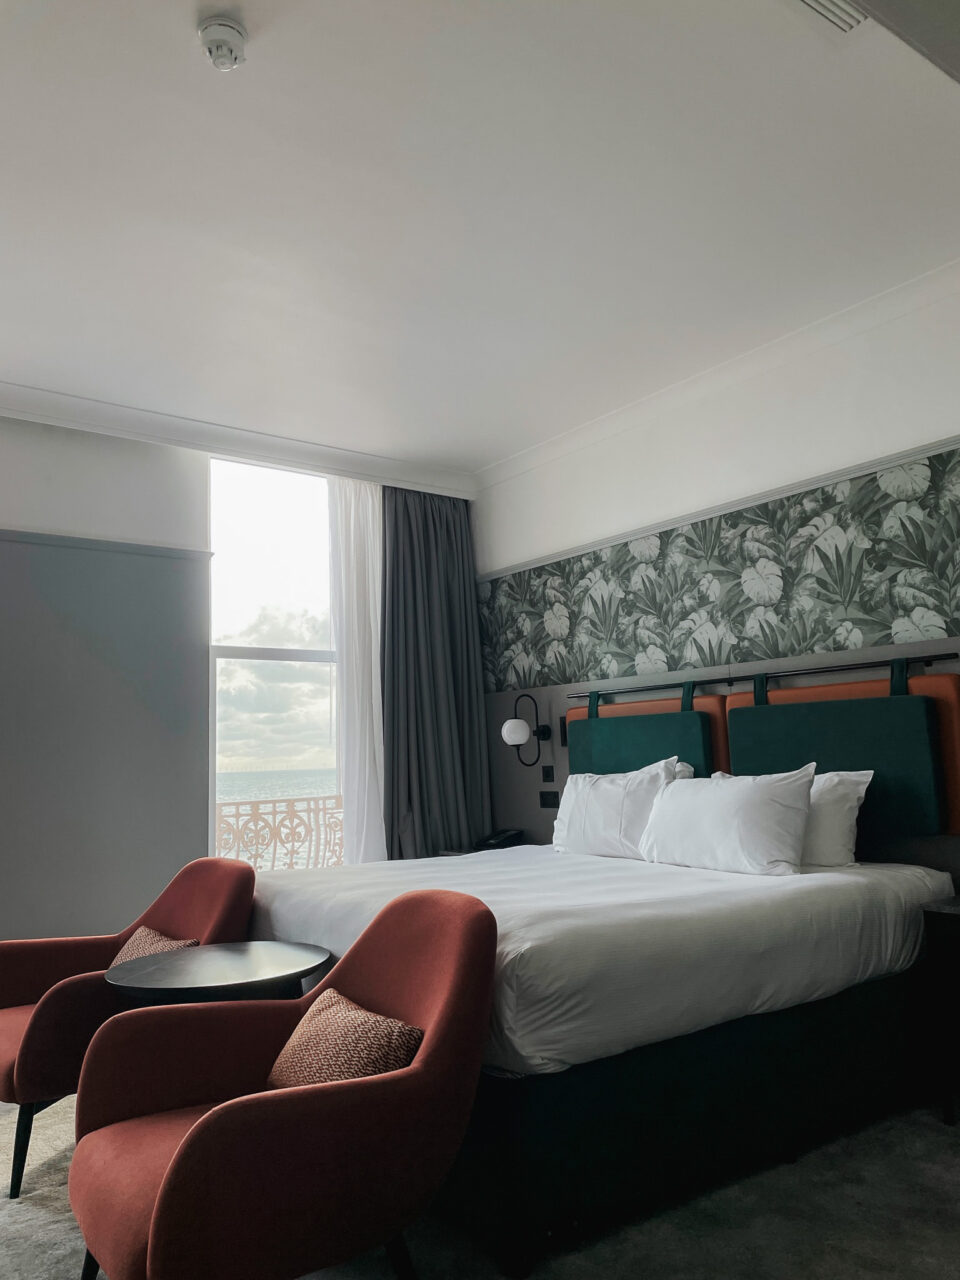 Dobbeltseng på hotellrom med grønne toner og vindu med utsikt. Foto